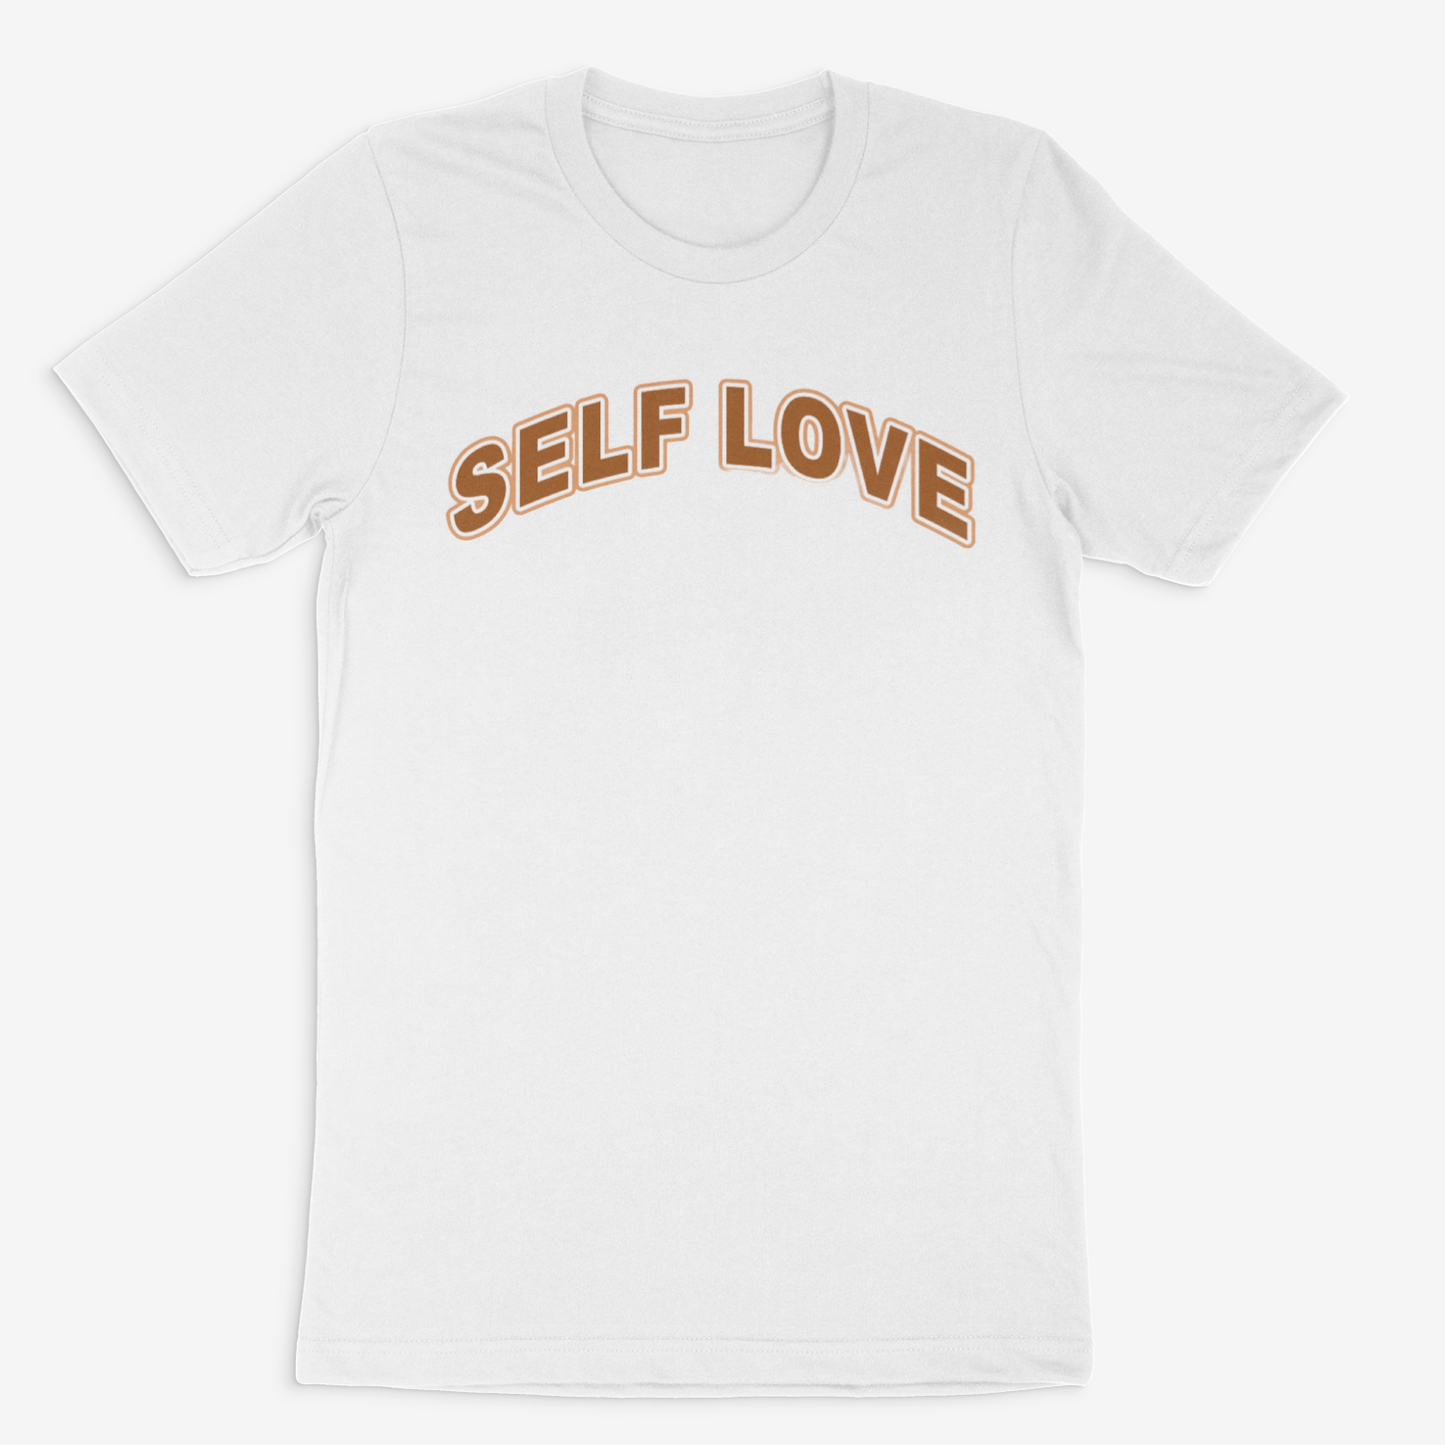 Self Love Tee (Tan)